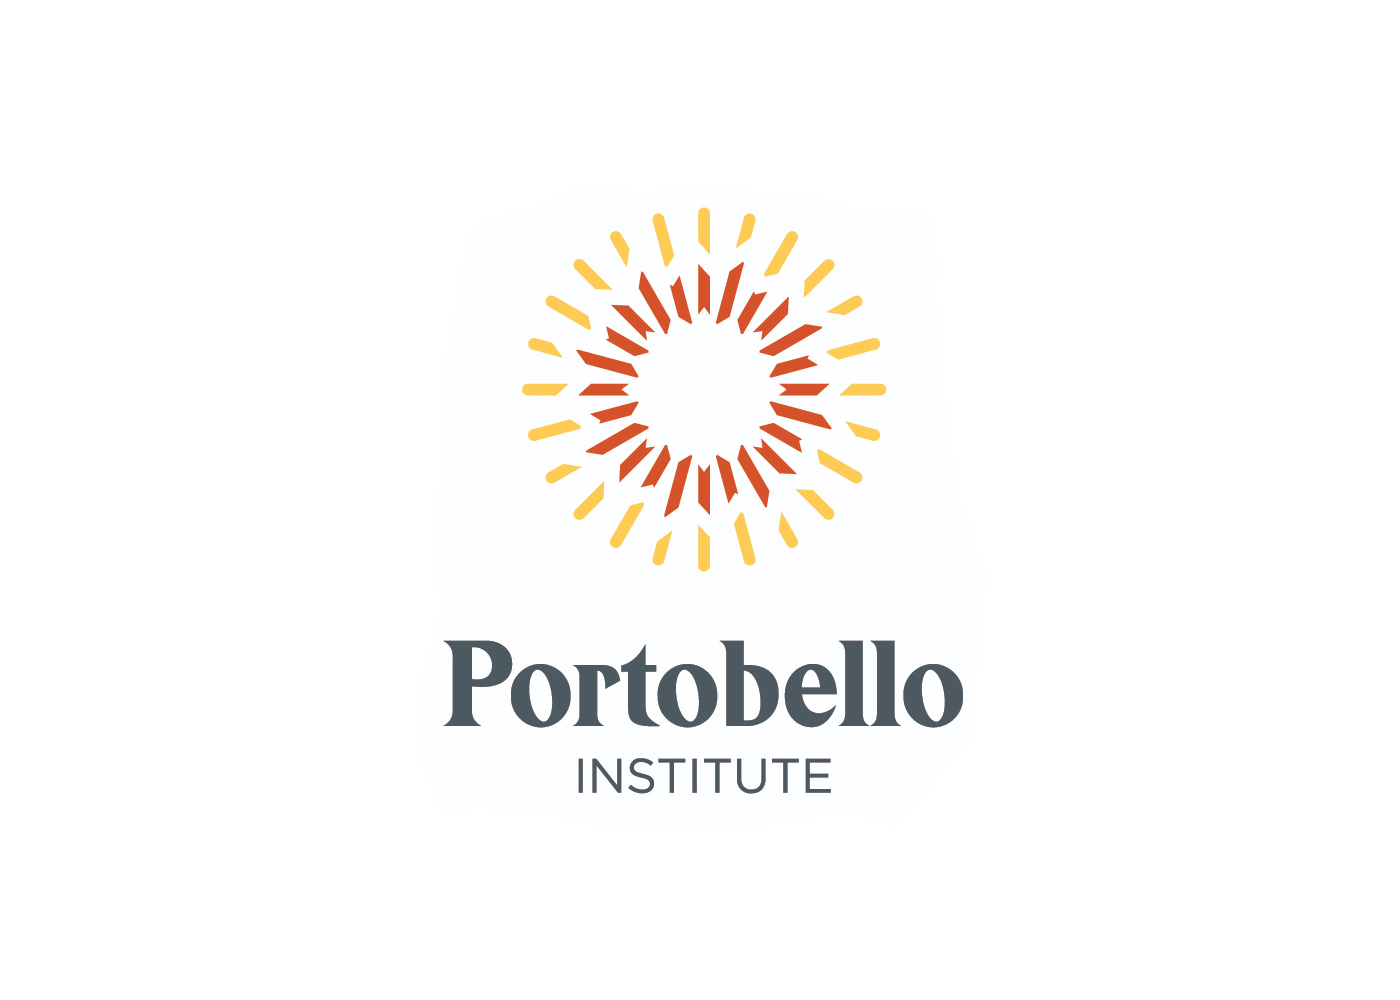 Portobello Institute: Making Education Accessible